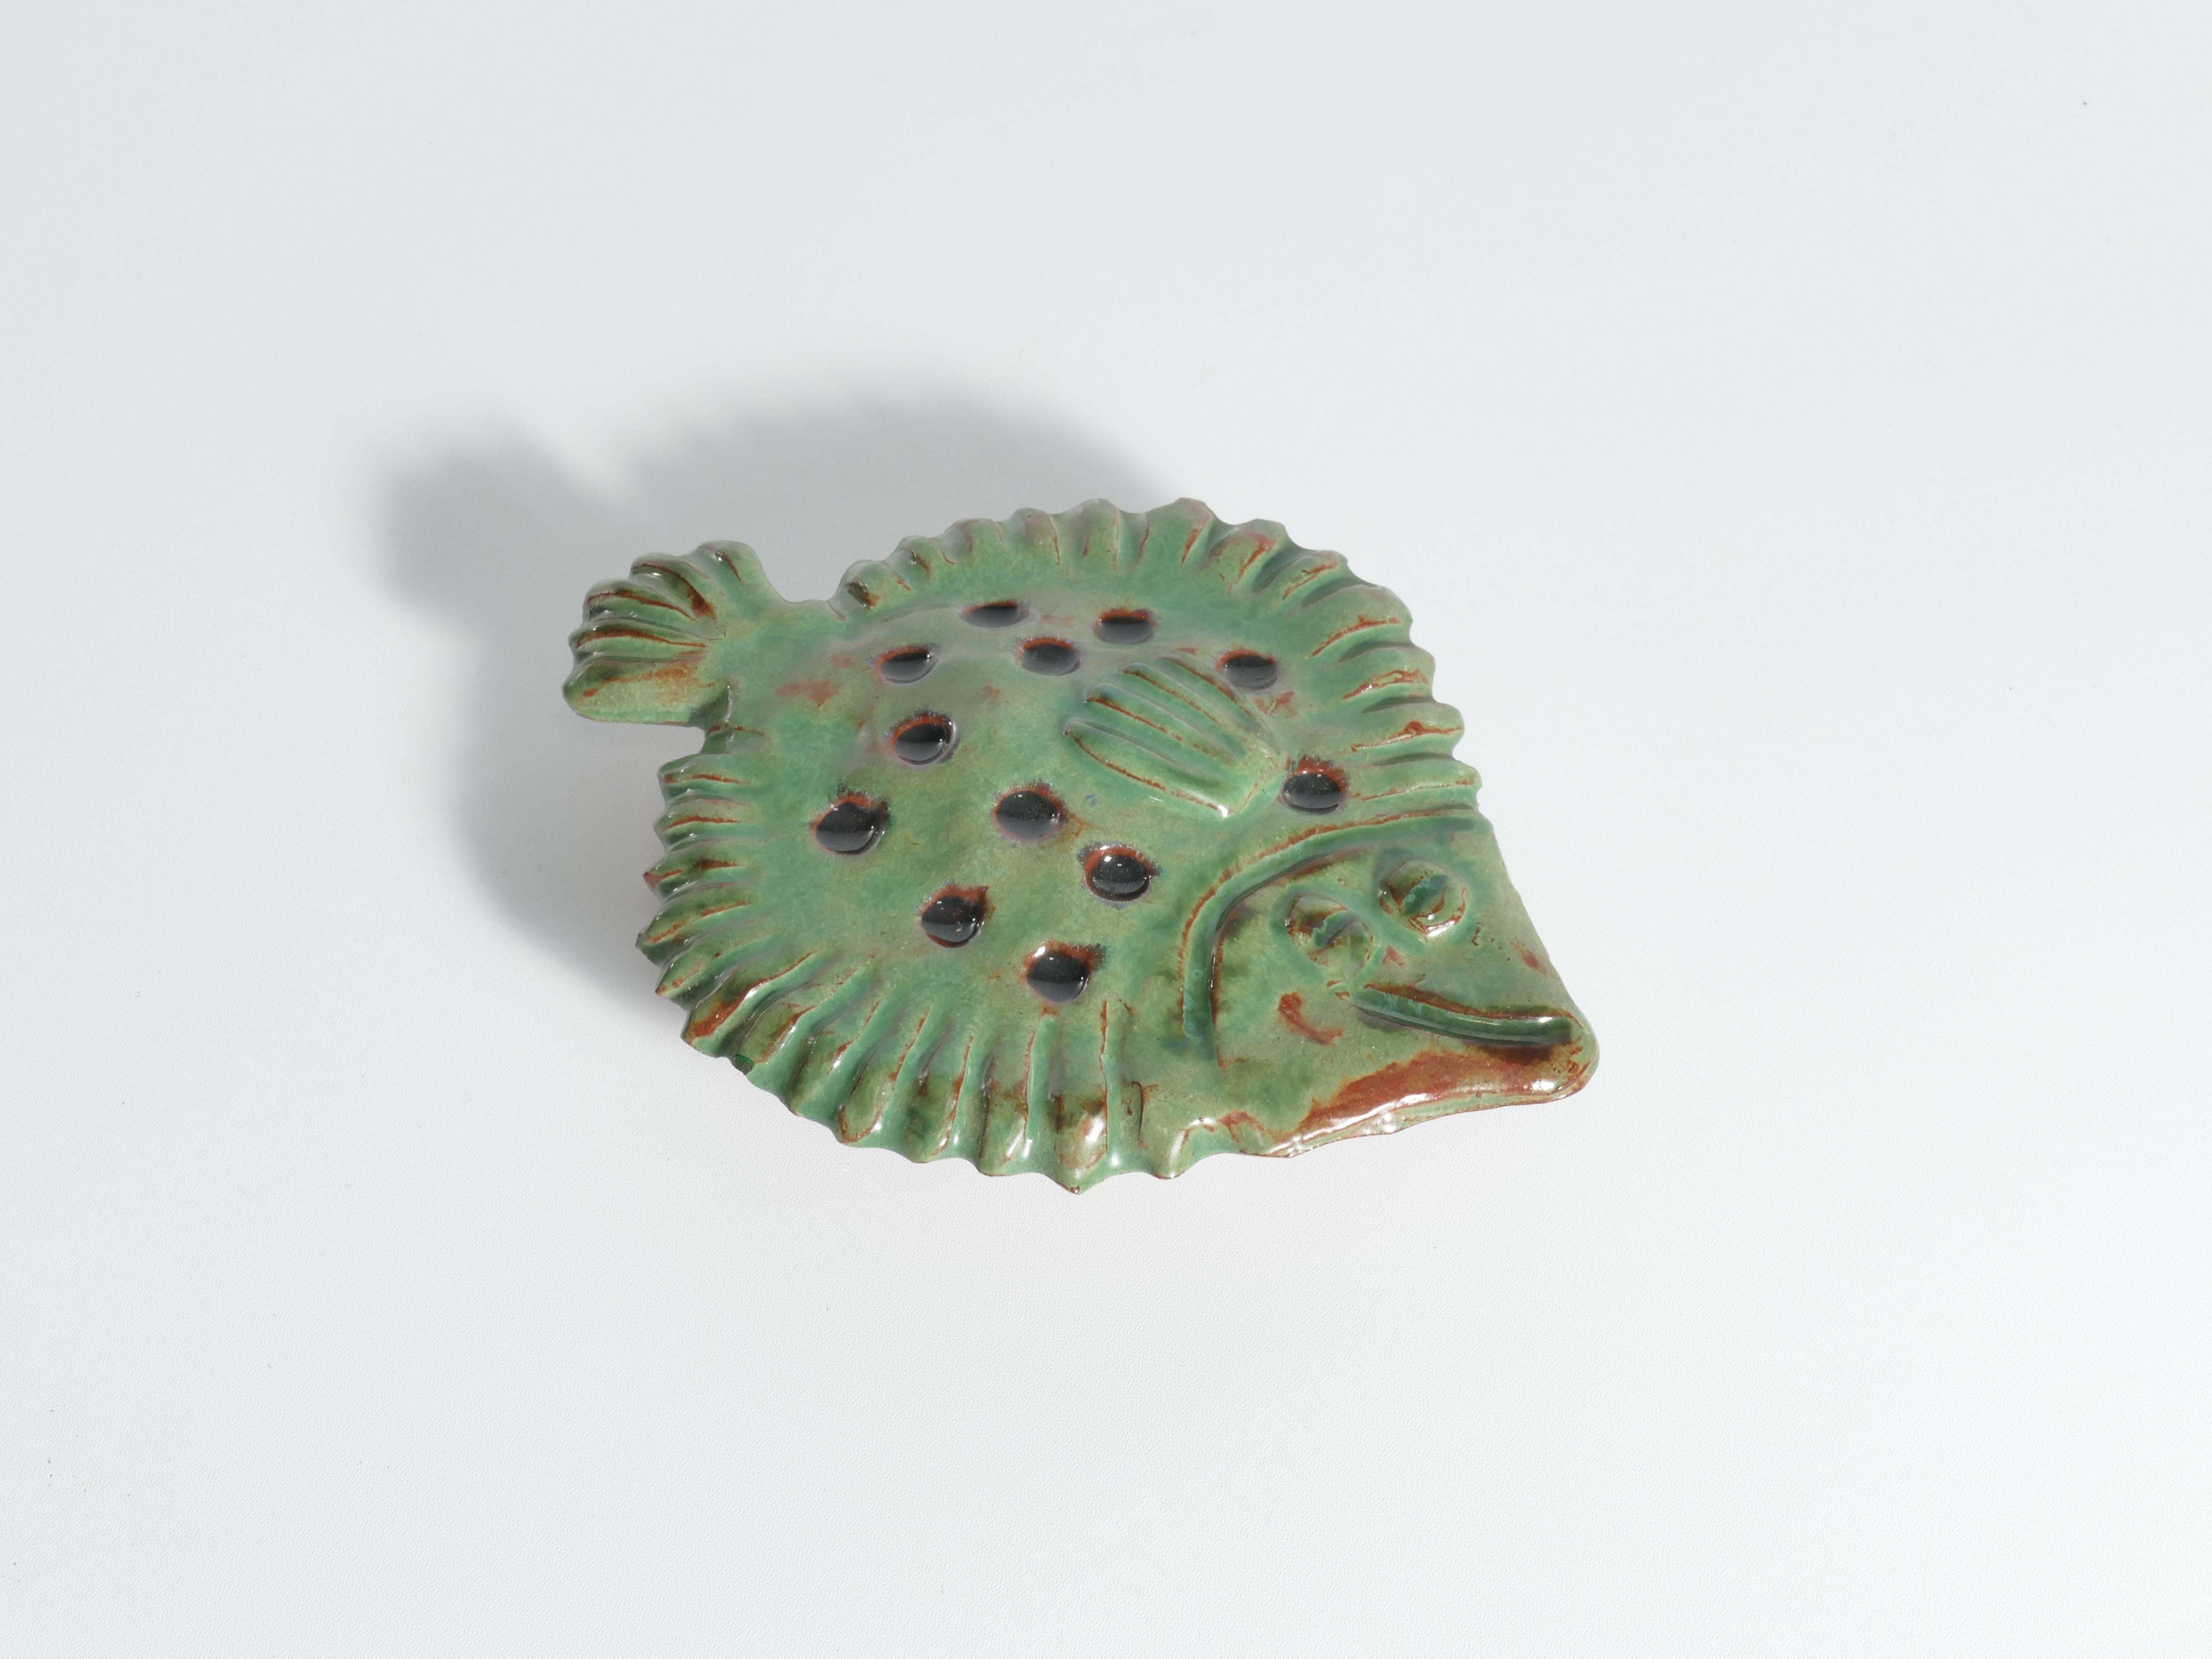 Glazed Vintage Green Ceramic Flounder Fish by Allan Hellman, Sweden 1981 For Sale